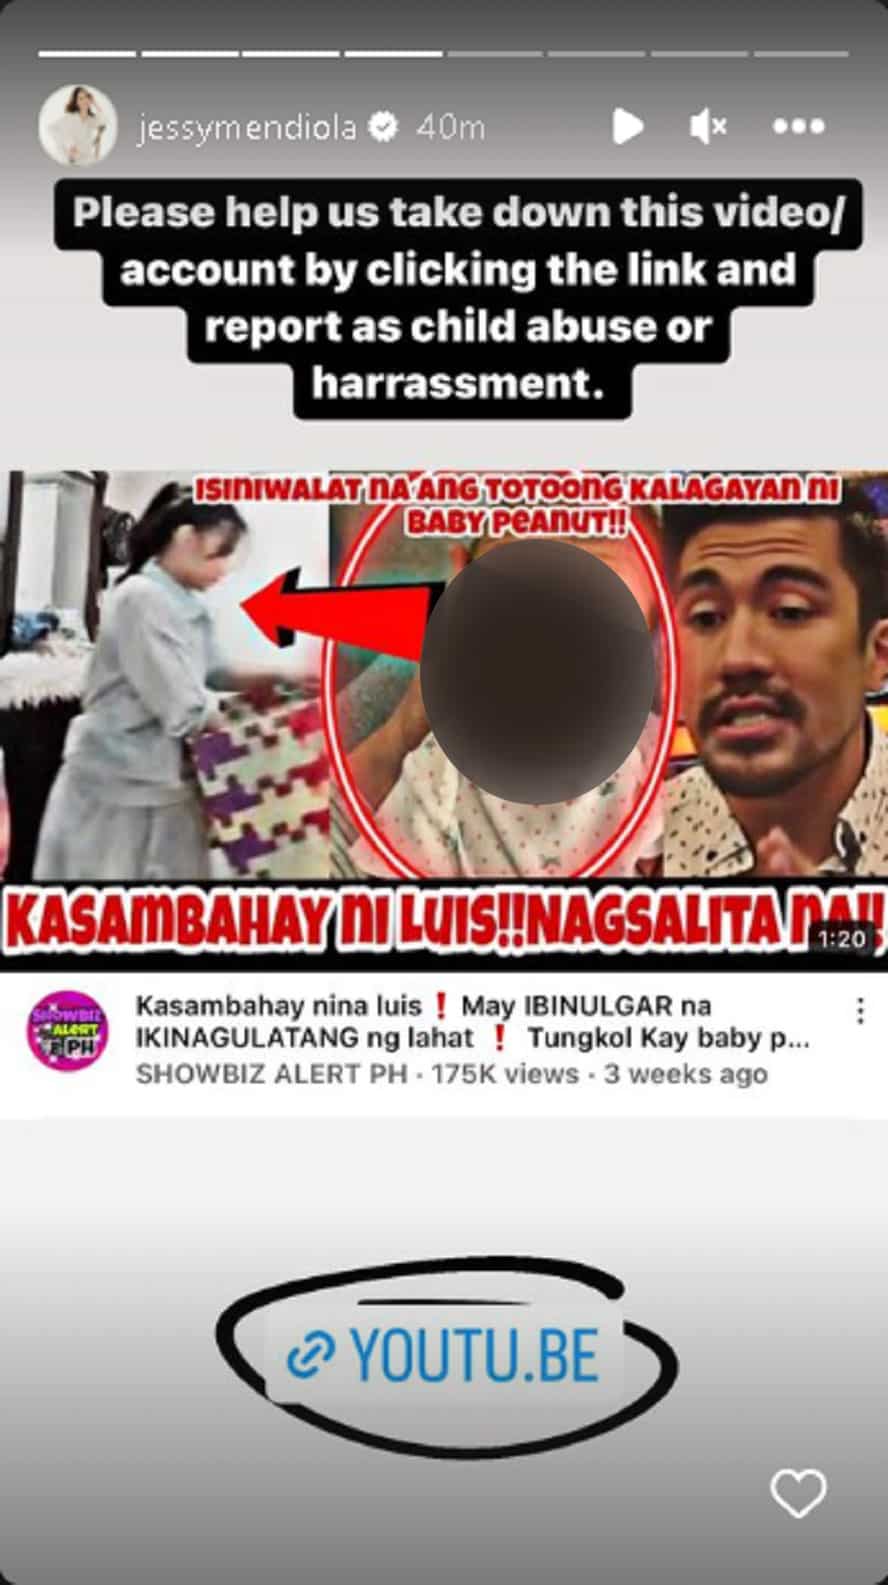 Jessy Mendiola, umaapela ng tulong para ireport ang fake video na nagpapakitang may diperensya ang anak